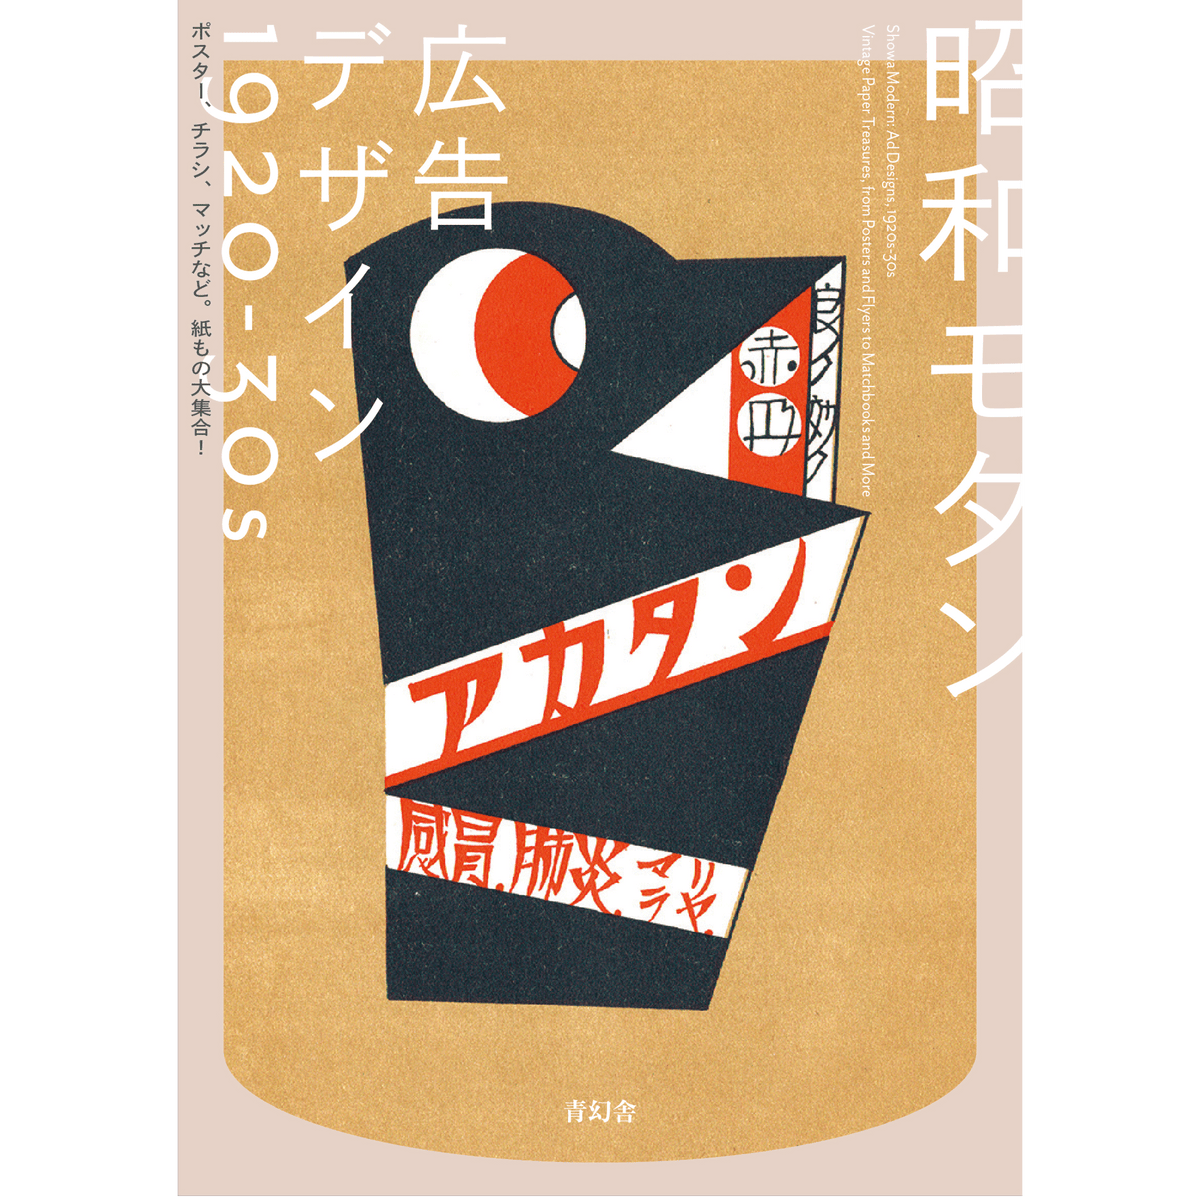 昭和モダン 広告デザイン 1920-30s ポスター、チラシ、マッチなど。紙もの大集合! – 青幻舎オンラインショップ